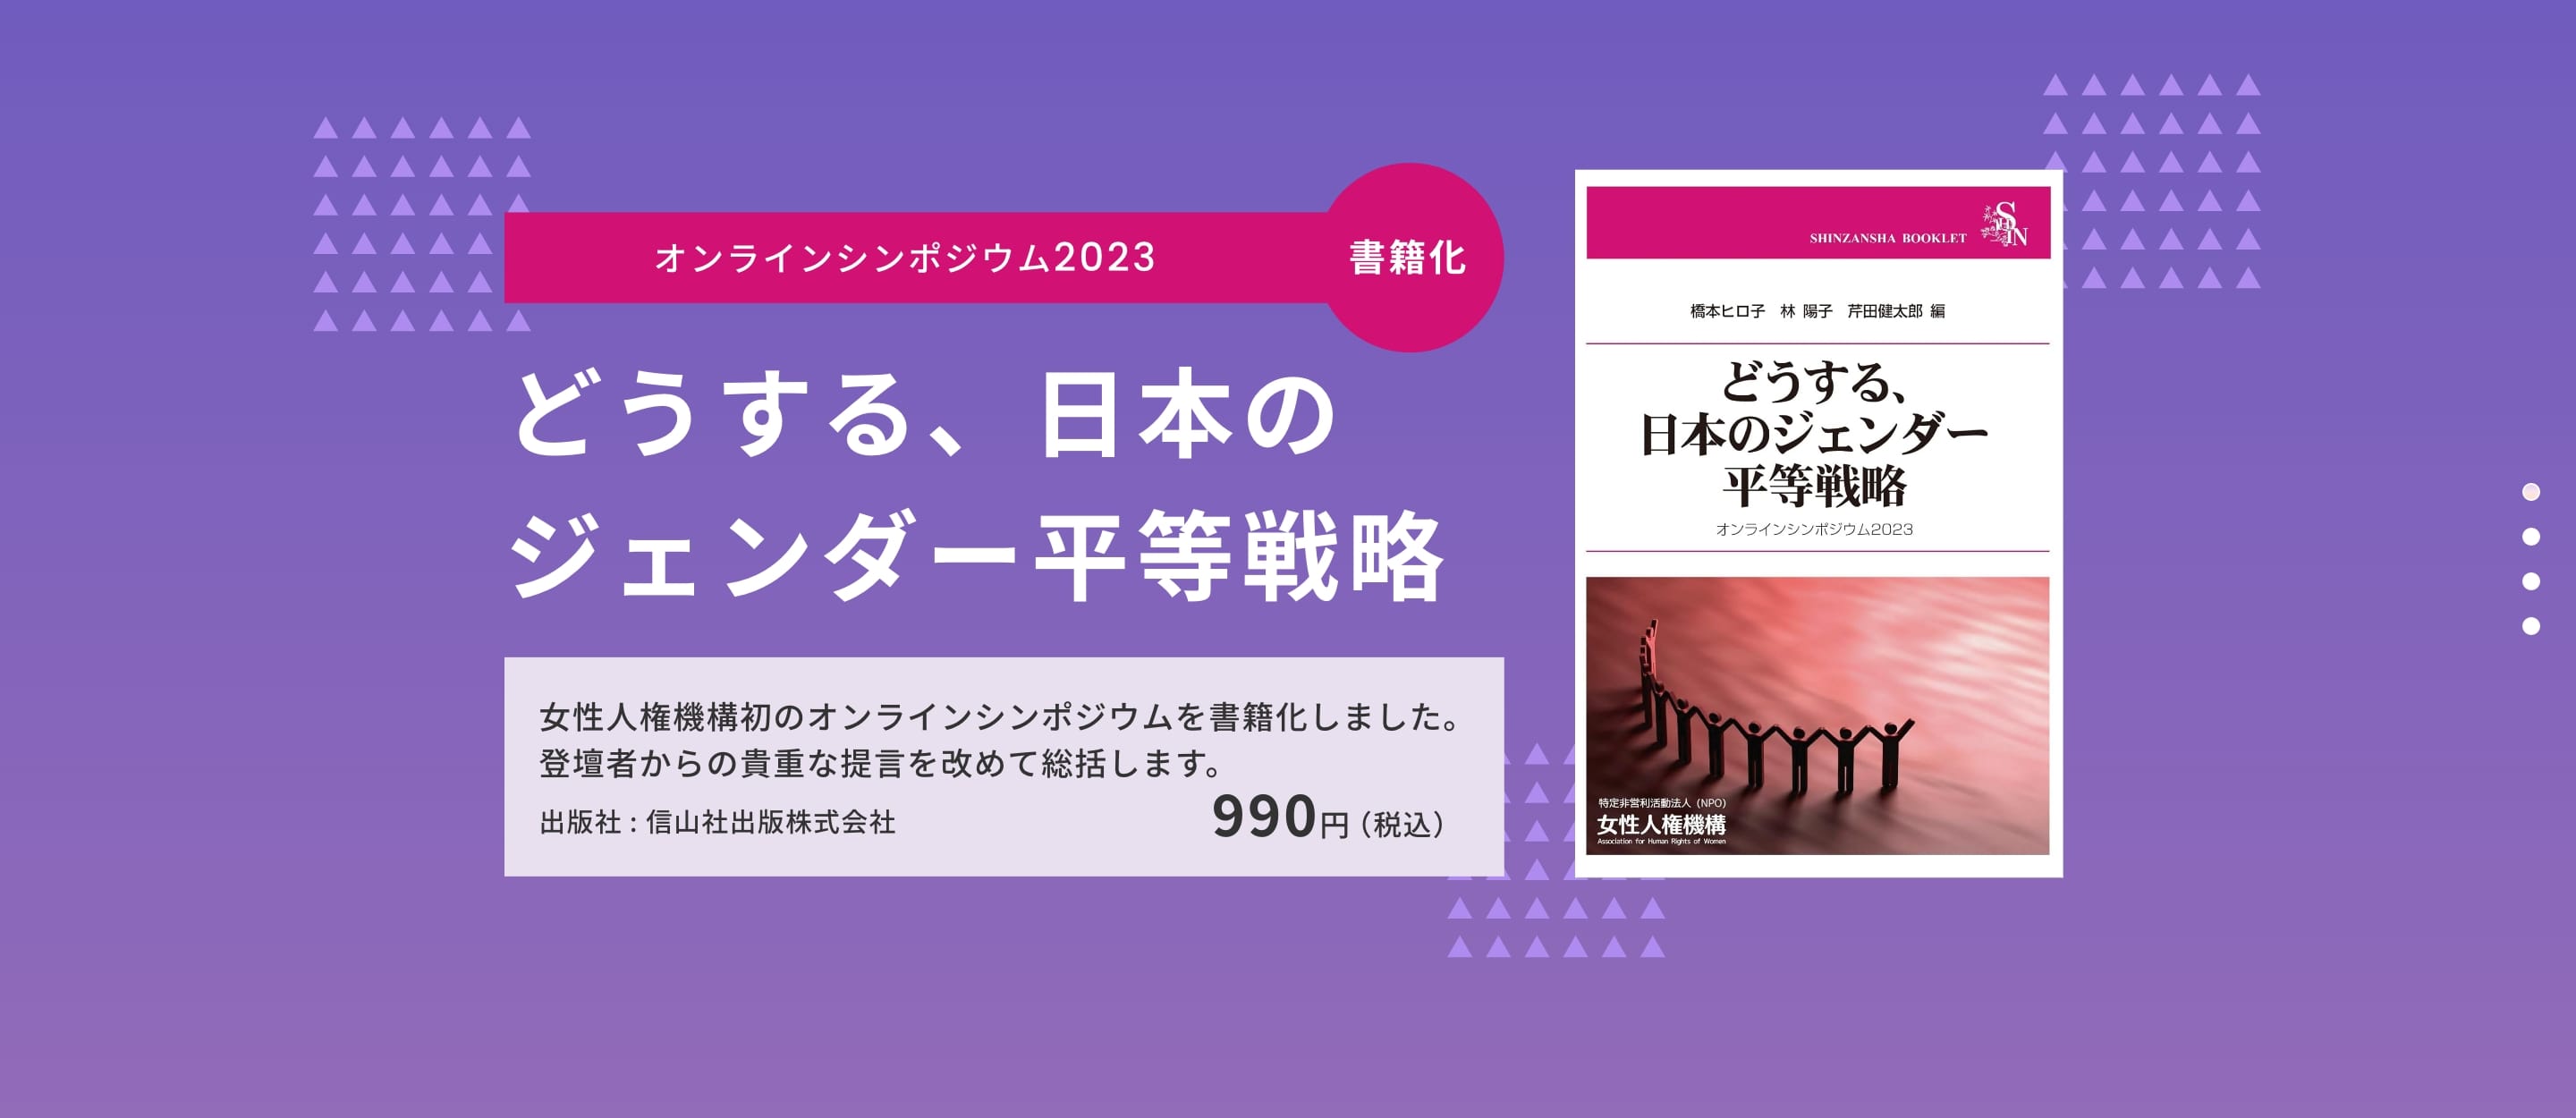 オンラインシンポジウム2023「どうする、日本のジェンダー平等戦略」が書籍化されました。女性人権機構初のオンラインシンポジウムが書籍化、登壇者からの貴重な提言を改めて、総括します。出版社は信山社出版株式会社です。価格は税込990円です。詳しくはこちら。